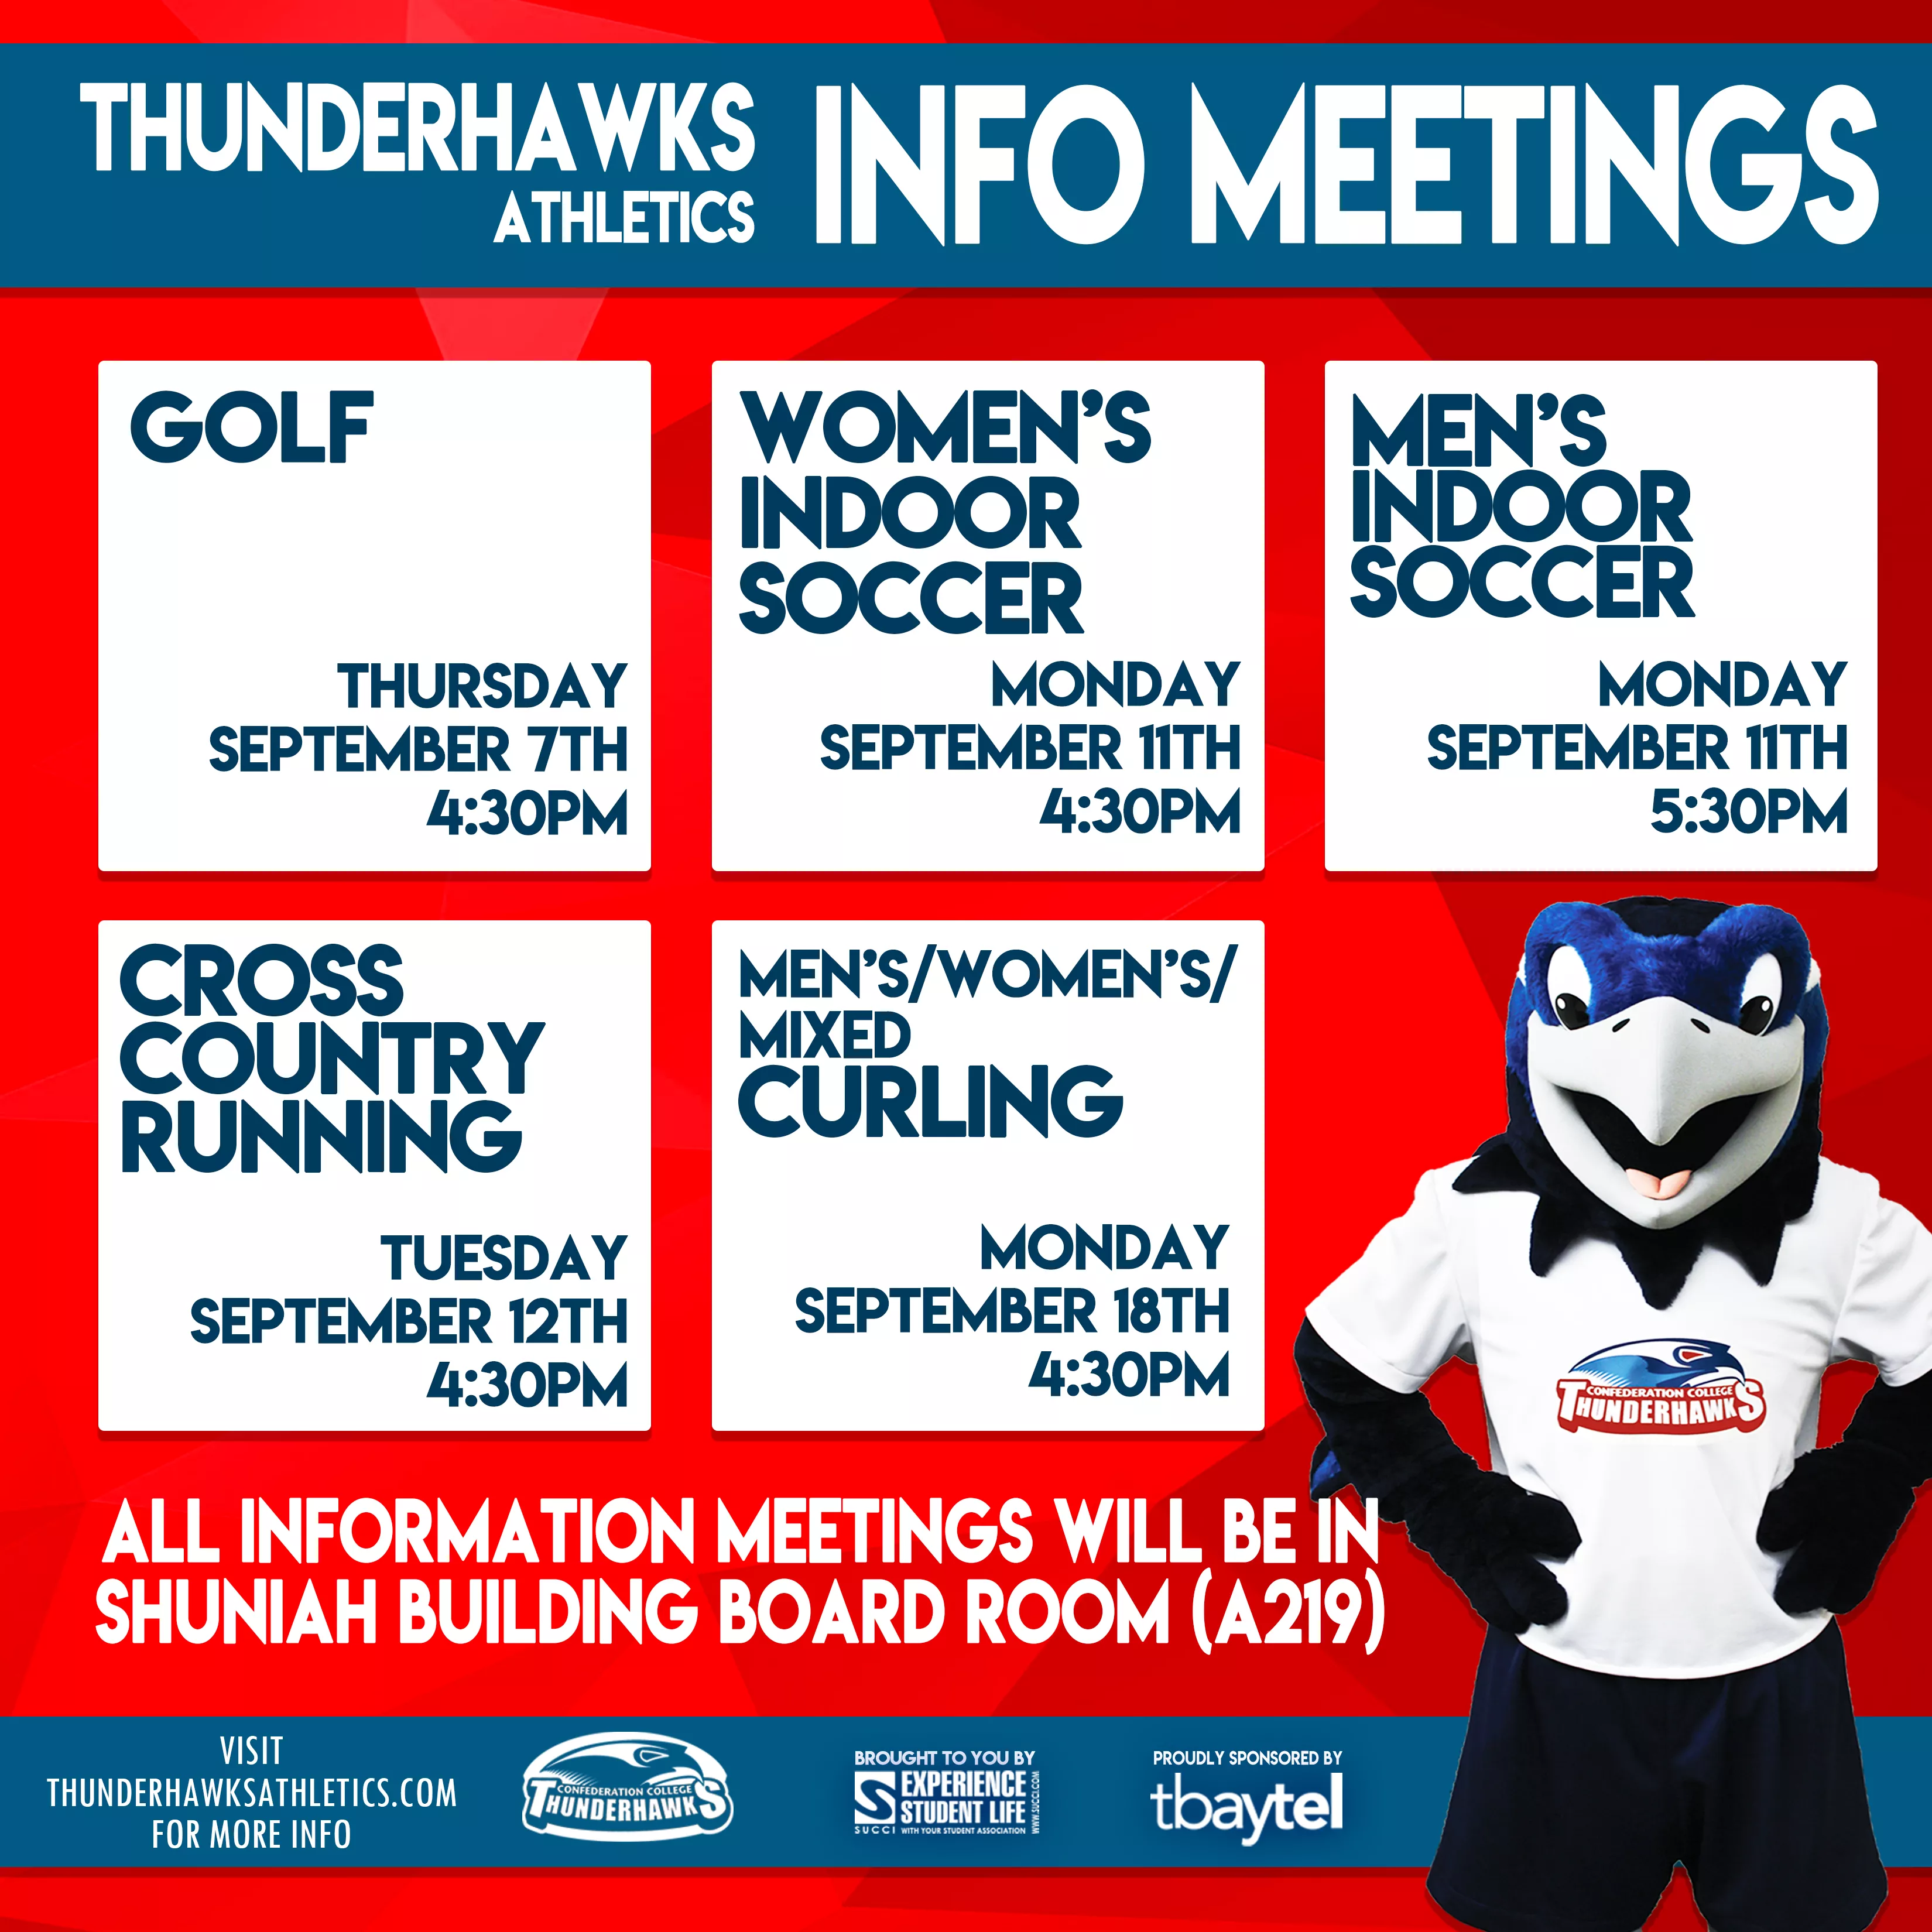 Thunderhawks Athletics Info Meeting